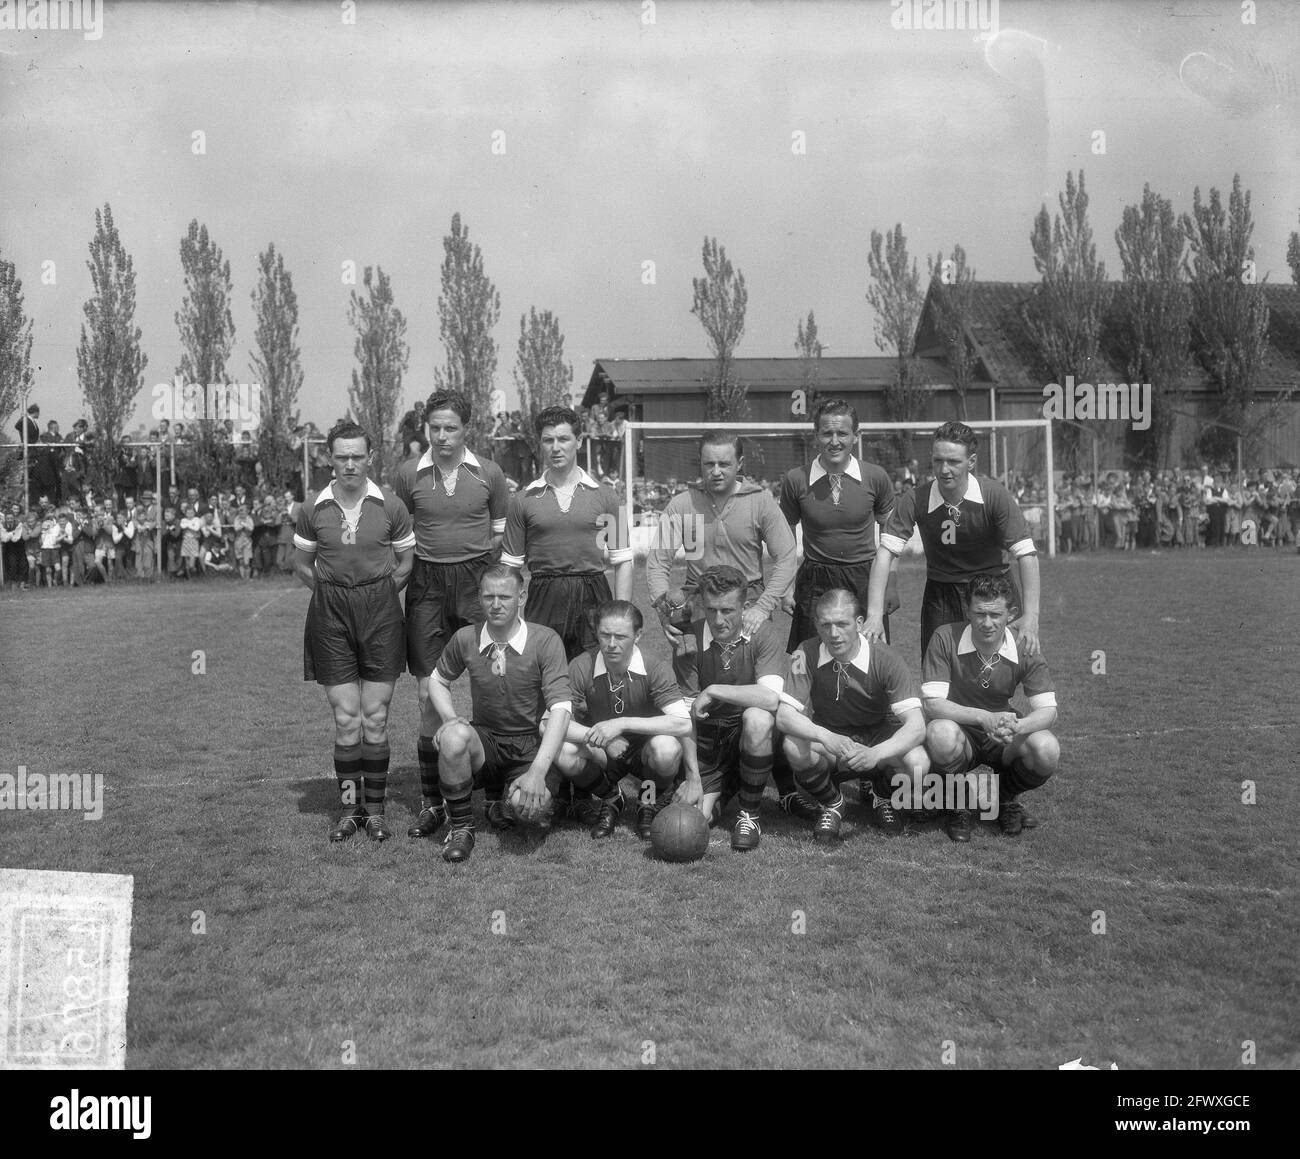 Promotion Match 2e classe ÉBH-DHC 2-4. Équipe d'ÉBOH de Dordrecht, 24 mai 1951, équipes, portraits de groupe, Sports, football, pays-Bas, 20e siècle Banque D'Images